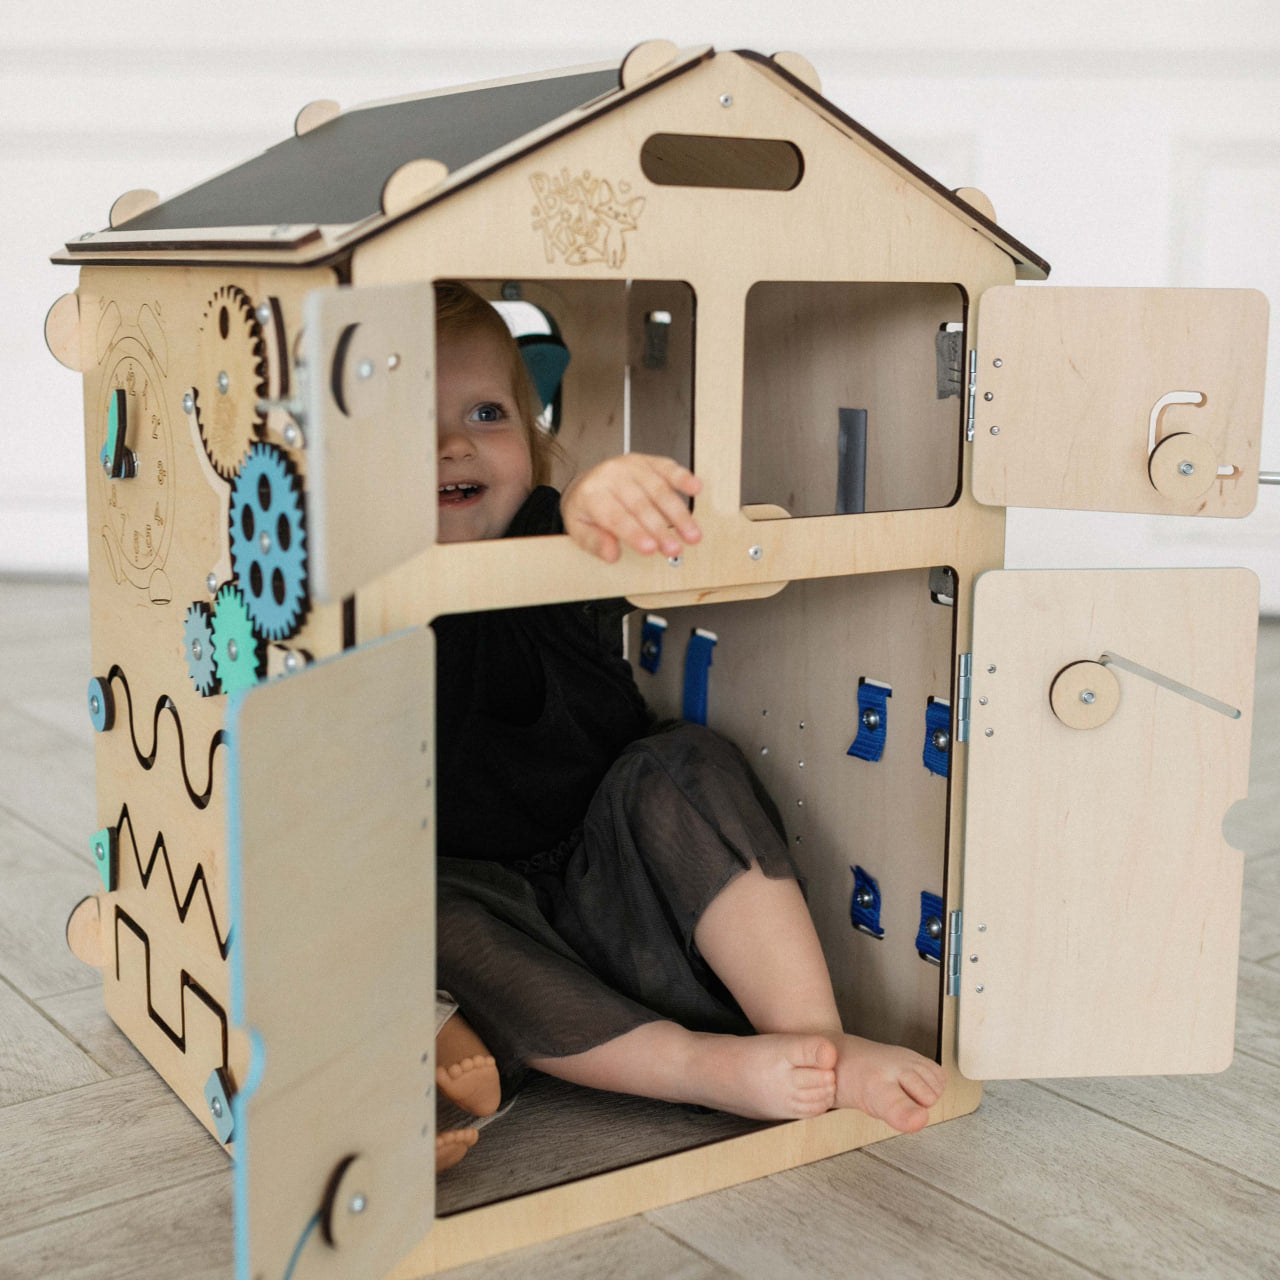 Sgabello Montessori per bambini - Bimbi Felici - giocattoli in legno e  naturali ☘